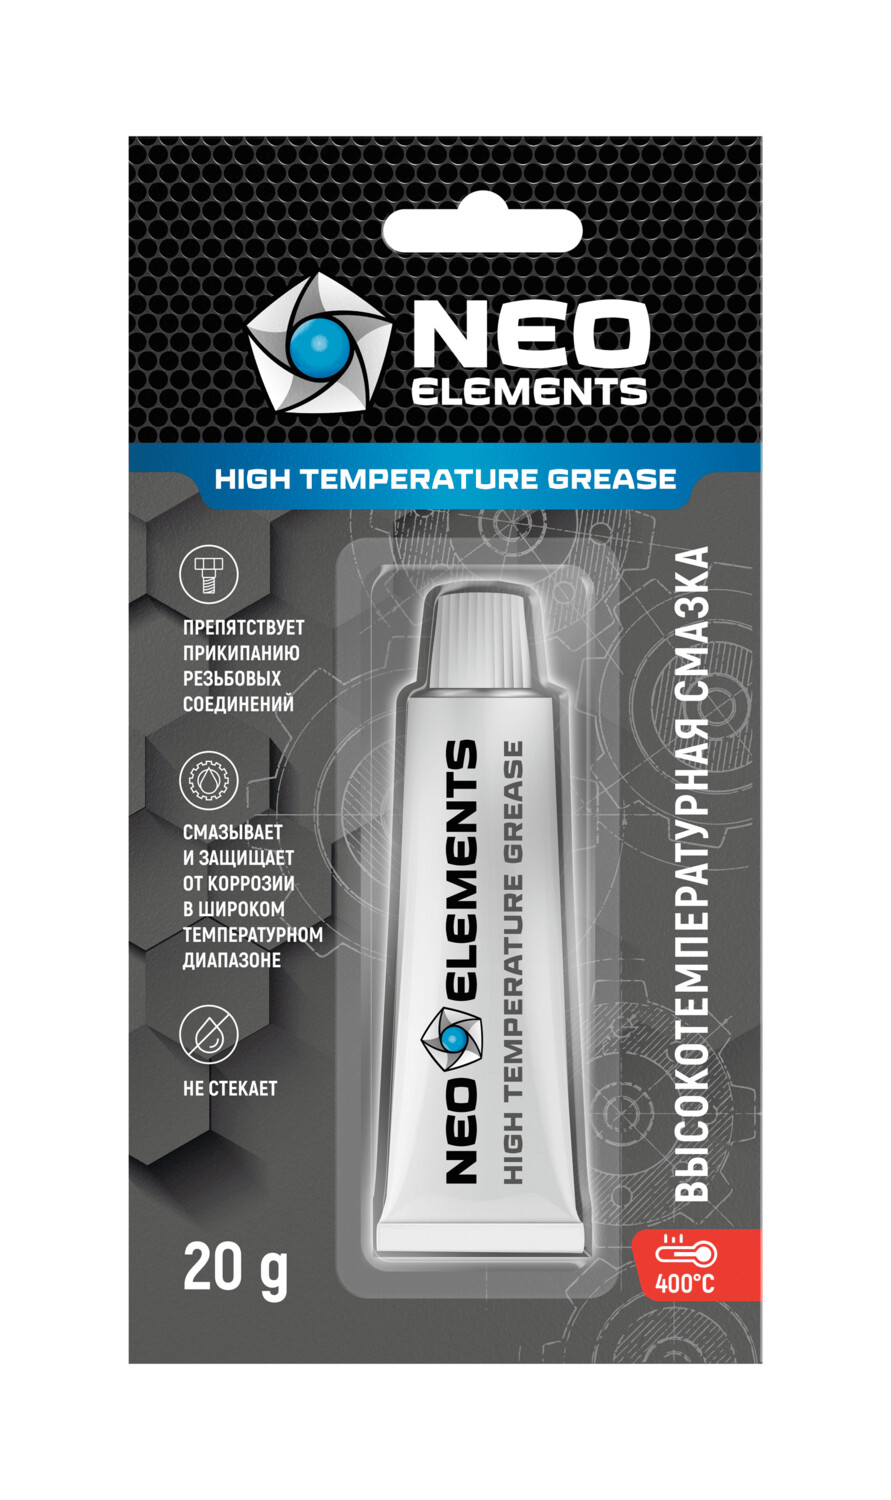 Высокотемпературная смазка для чоков и резьбовых соединений NEO ELEMENTS